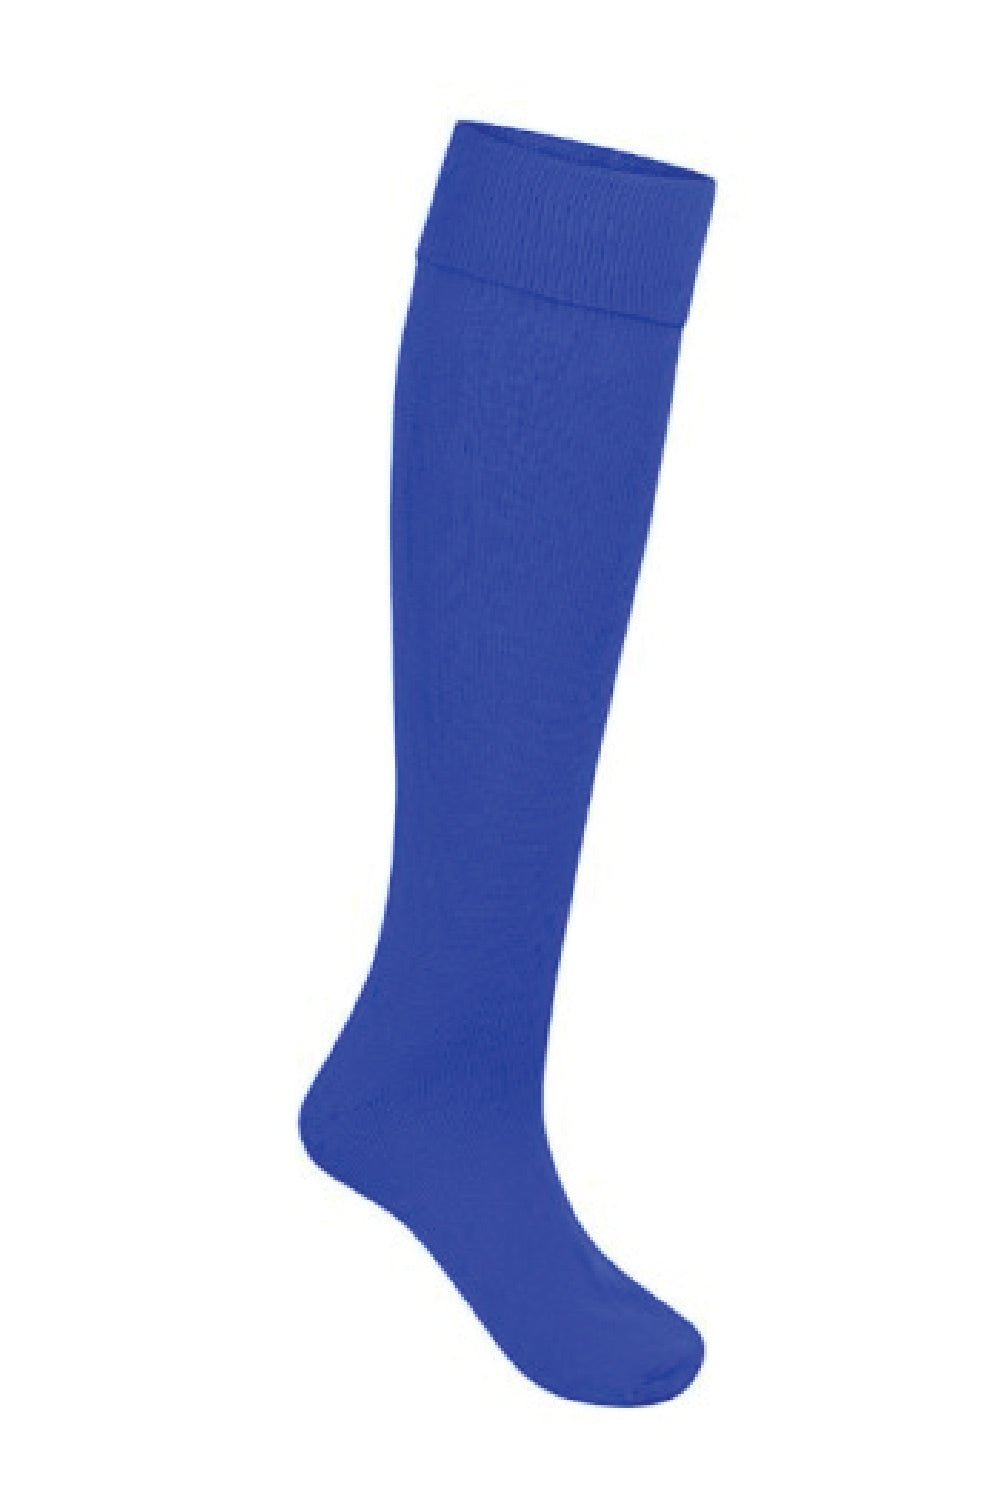 William Edwards School PE Sock - Uniformwise Schoolwear